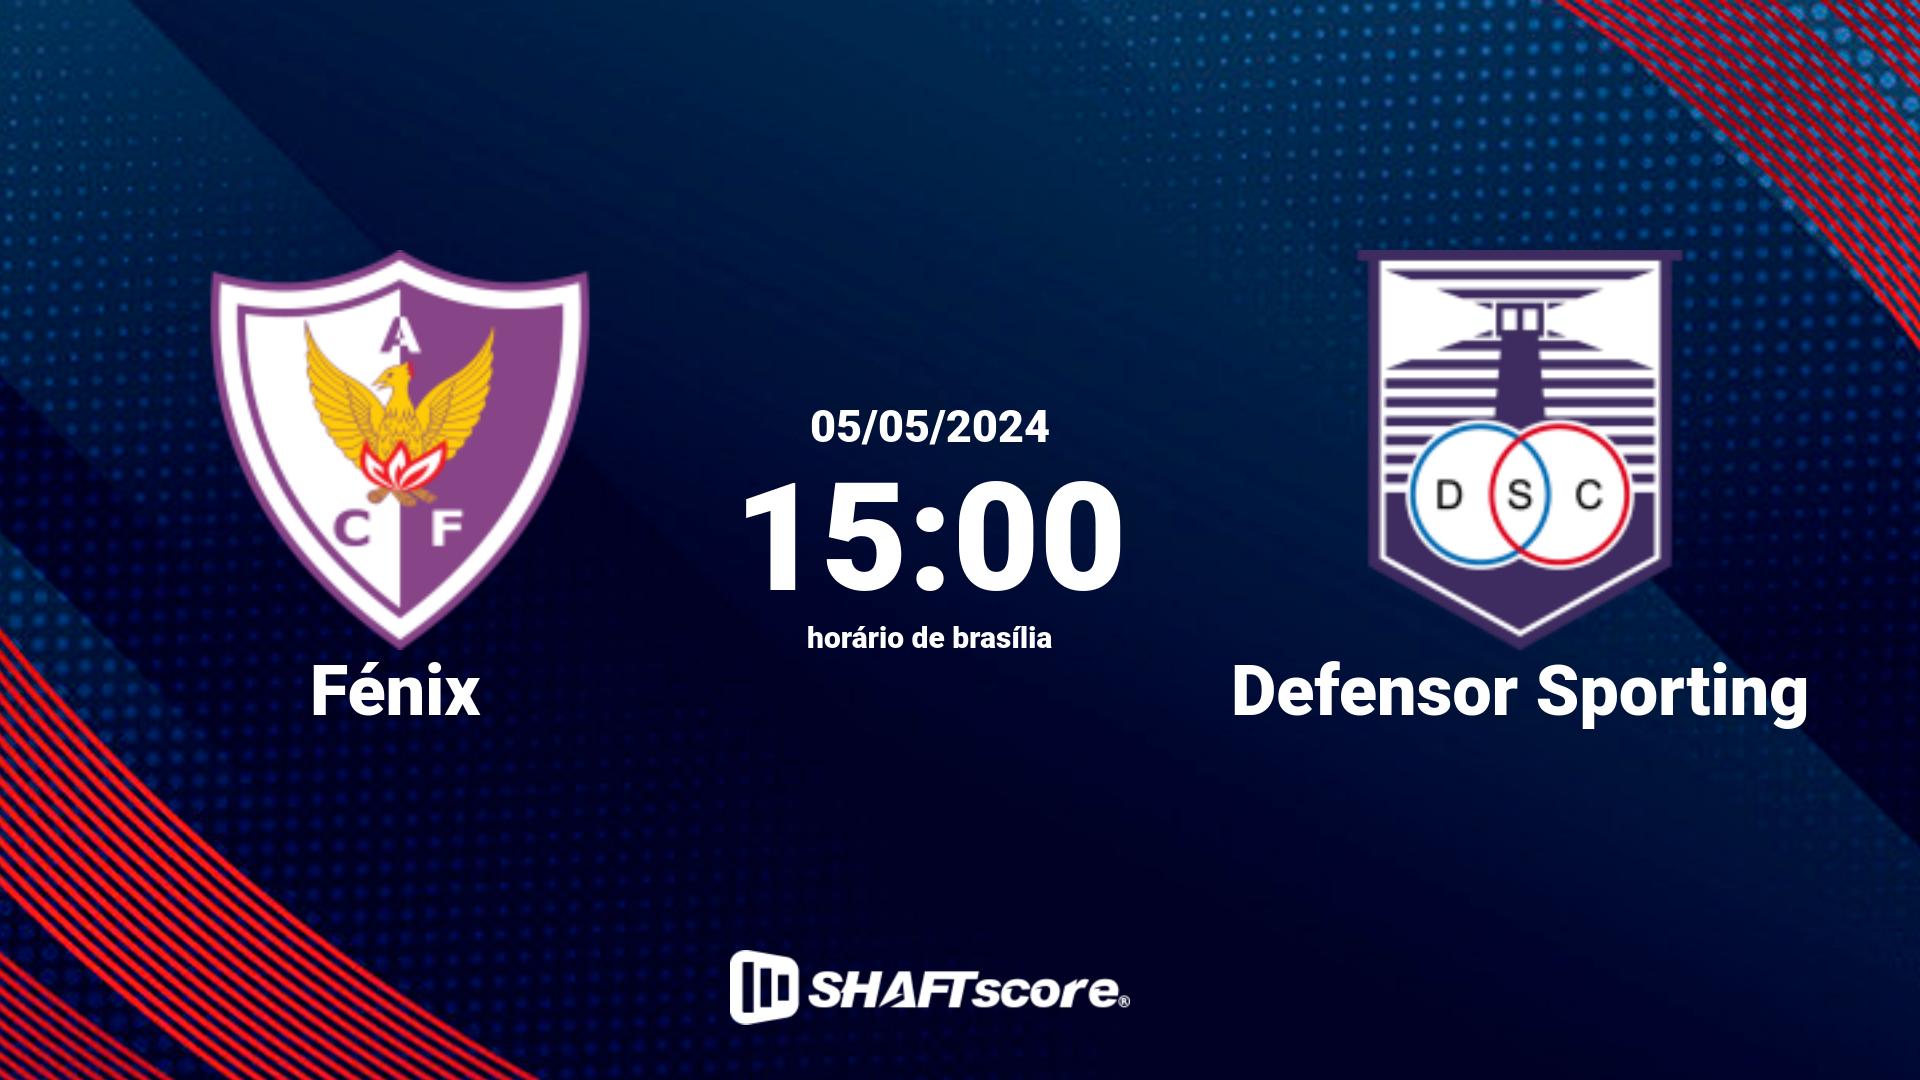 Estatísticas do jogo Fénix vs Defensor Sporting 05.05 15:00